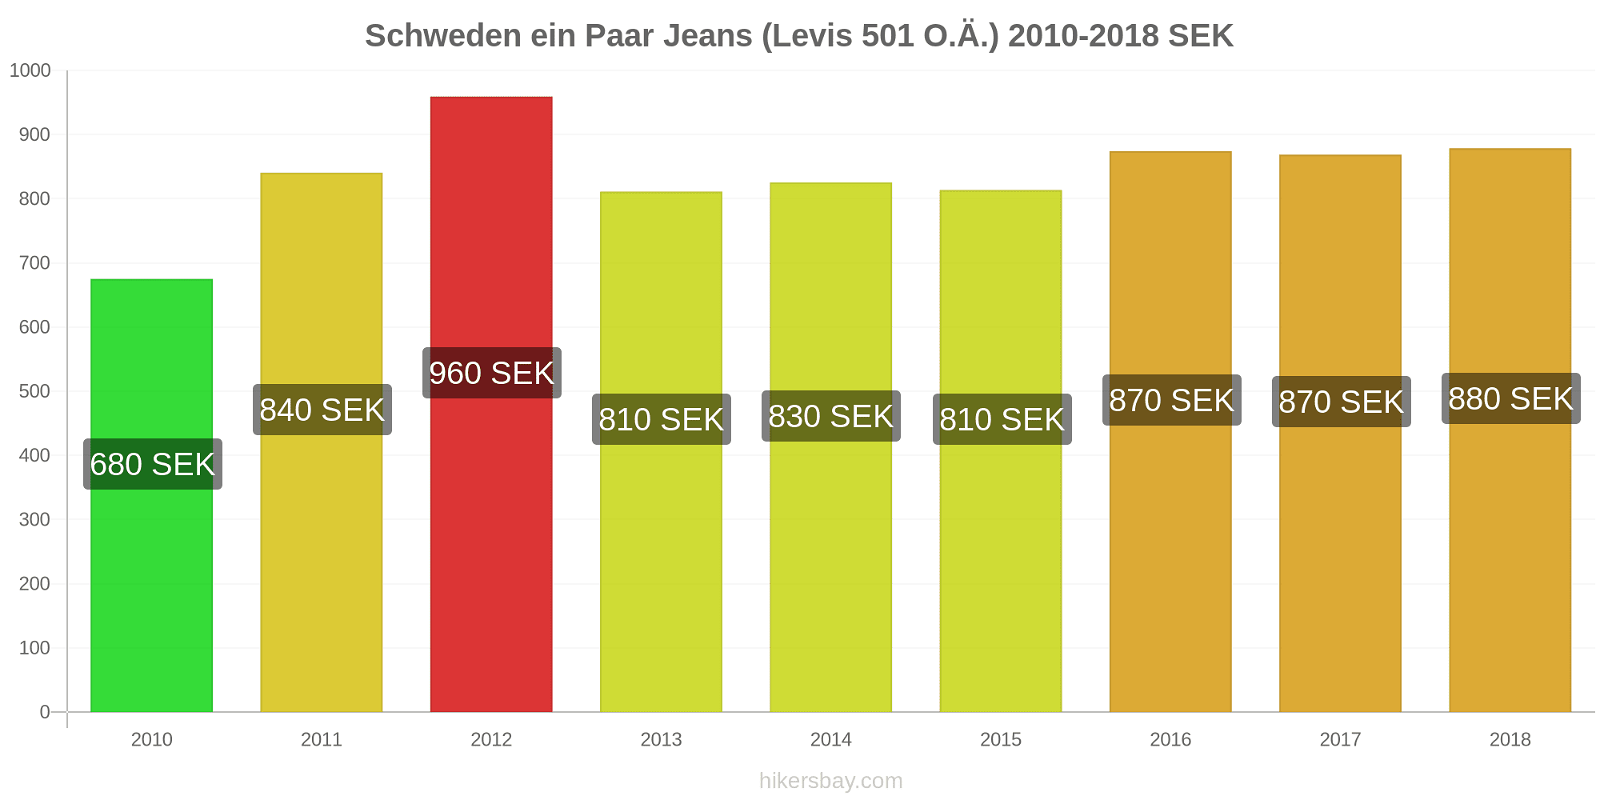 Schweden Preisänderungen 1 Paar Jeans (Levis 501 oder ähnlich) hikersbay.com